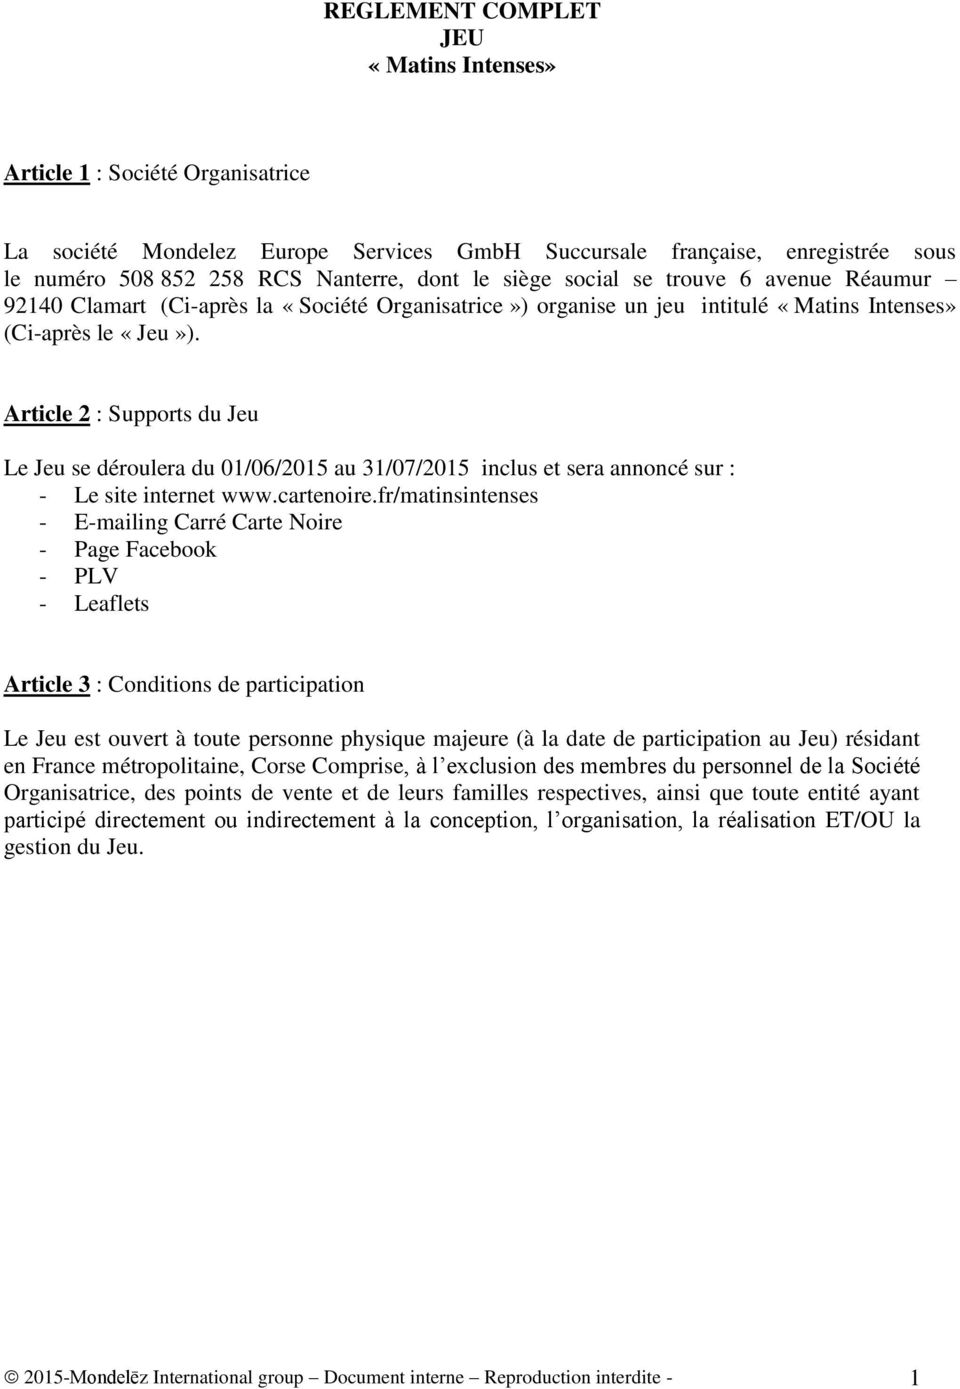 Article 2 : Supports du Jeu Le Jeu se déroulera du 01/06/2015 au 31/07/2015 inclus et sera annoncé sur : - Le site internet www.cartenoire.